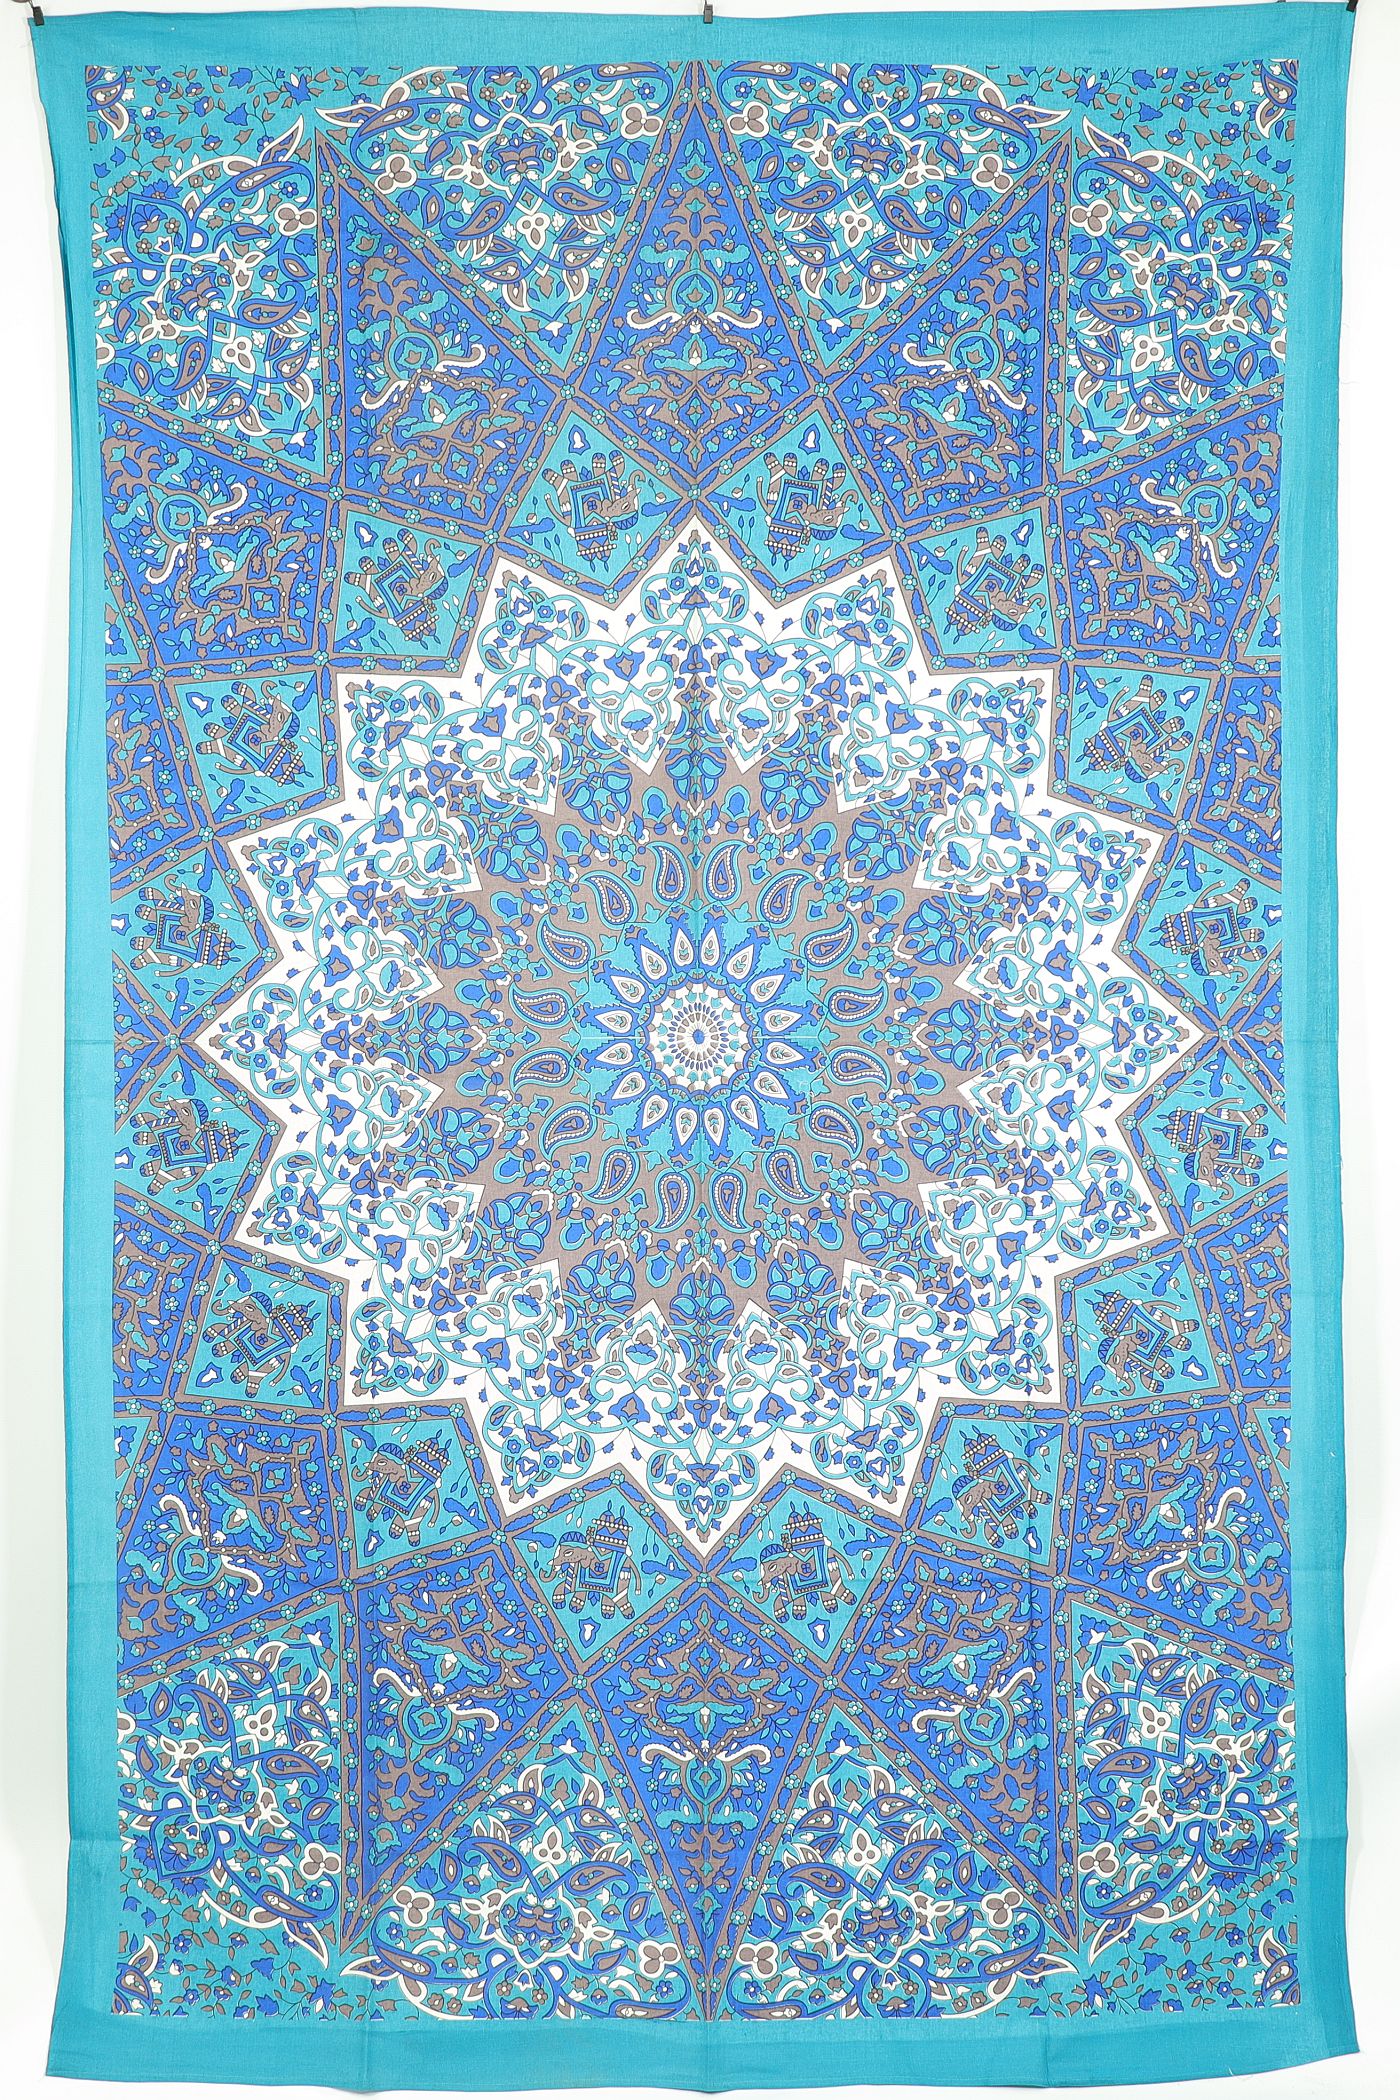 Wandtuch XL 130x210 - Mandala Stern mit Elefanten und Blumen - 100% Baumwolle - detailreicher indischer Druck - mehrfarbig - dekoratives Tuch, Wandbild, Tagesdecke, Bedcover, Vorhang, Picknick-Decke, Strandtuch